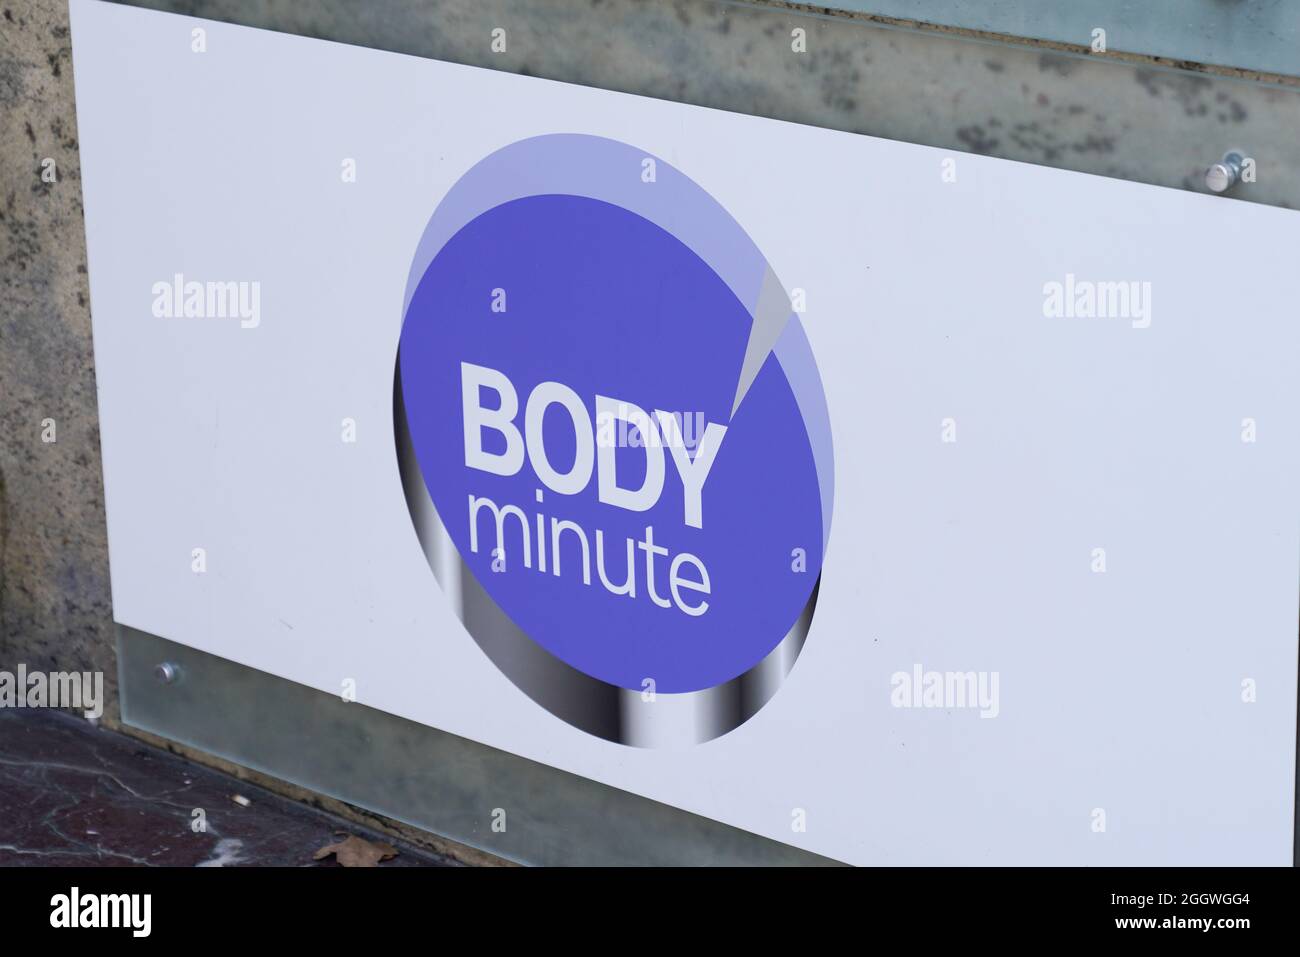 Bodyminute immagini e fotografie stock ad alta risoluzione - Alamy